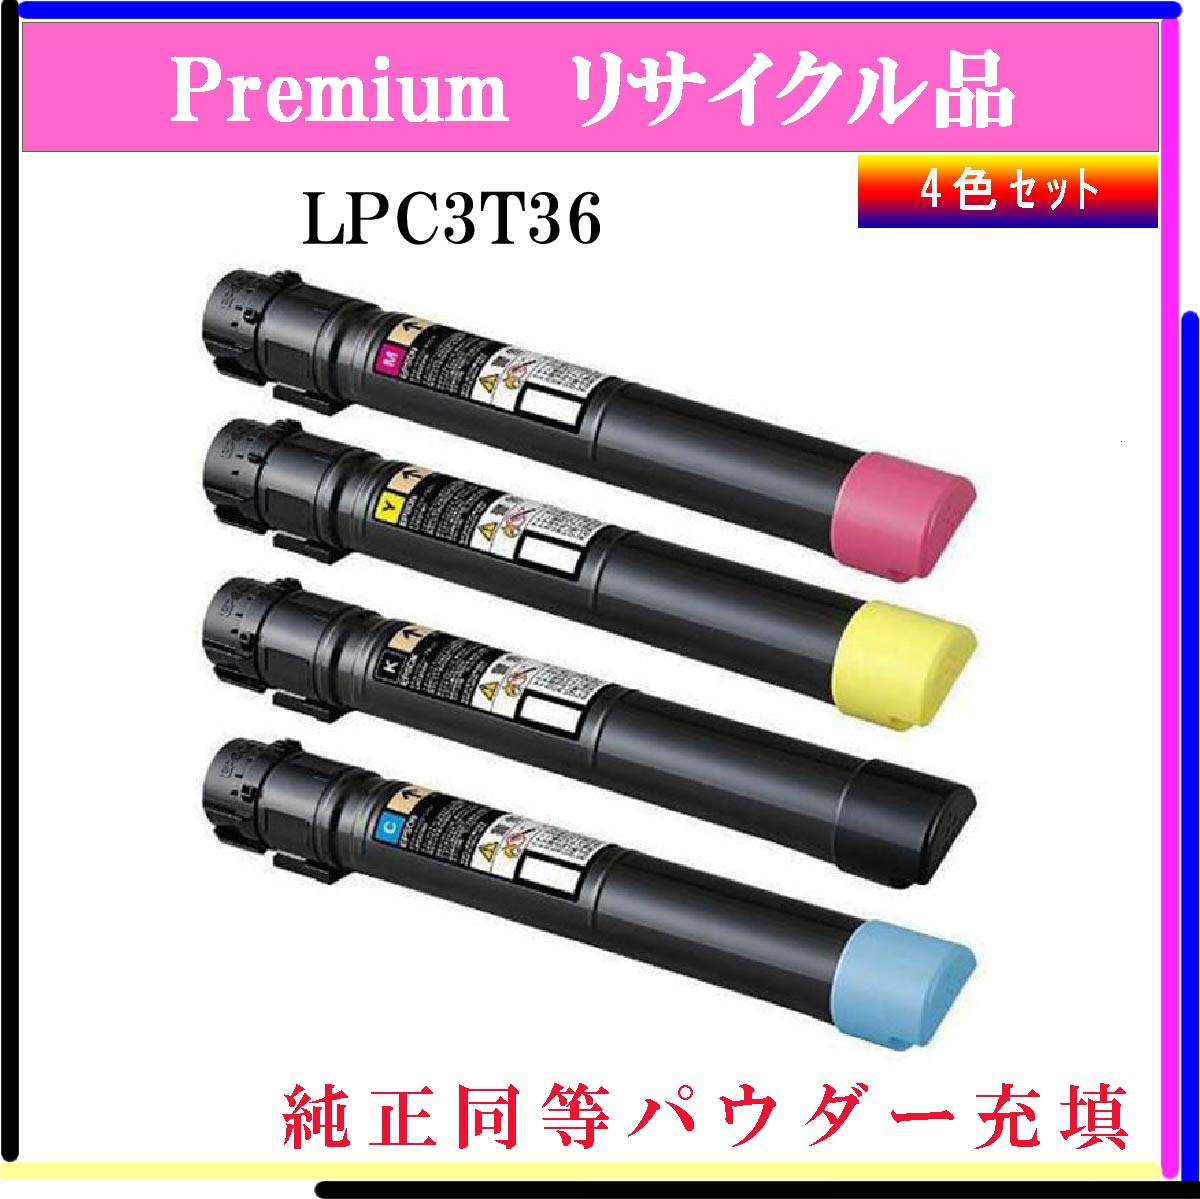 LPC3T36 (4色ｾｯﾄ) (純正同等ﾊﾟｳﾀﾞｰ)